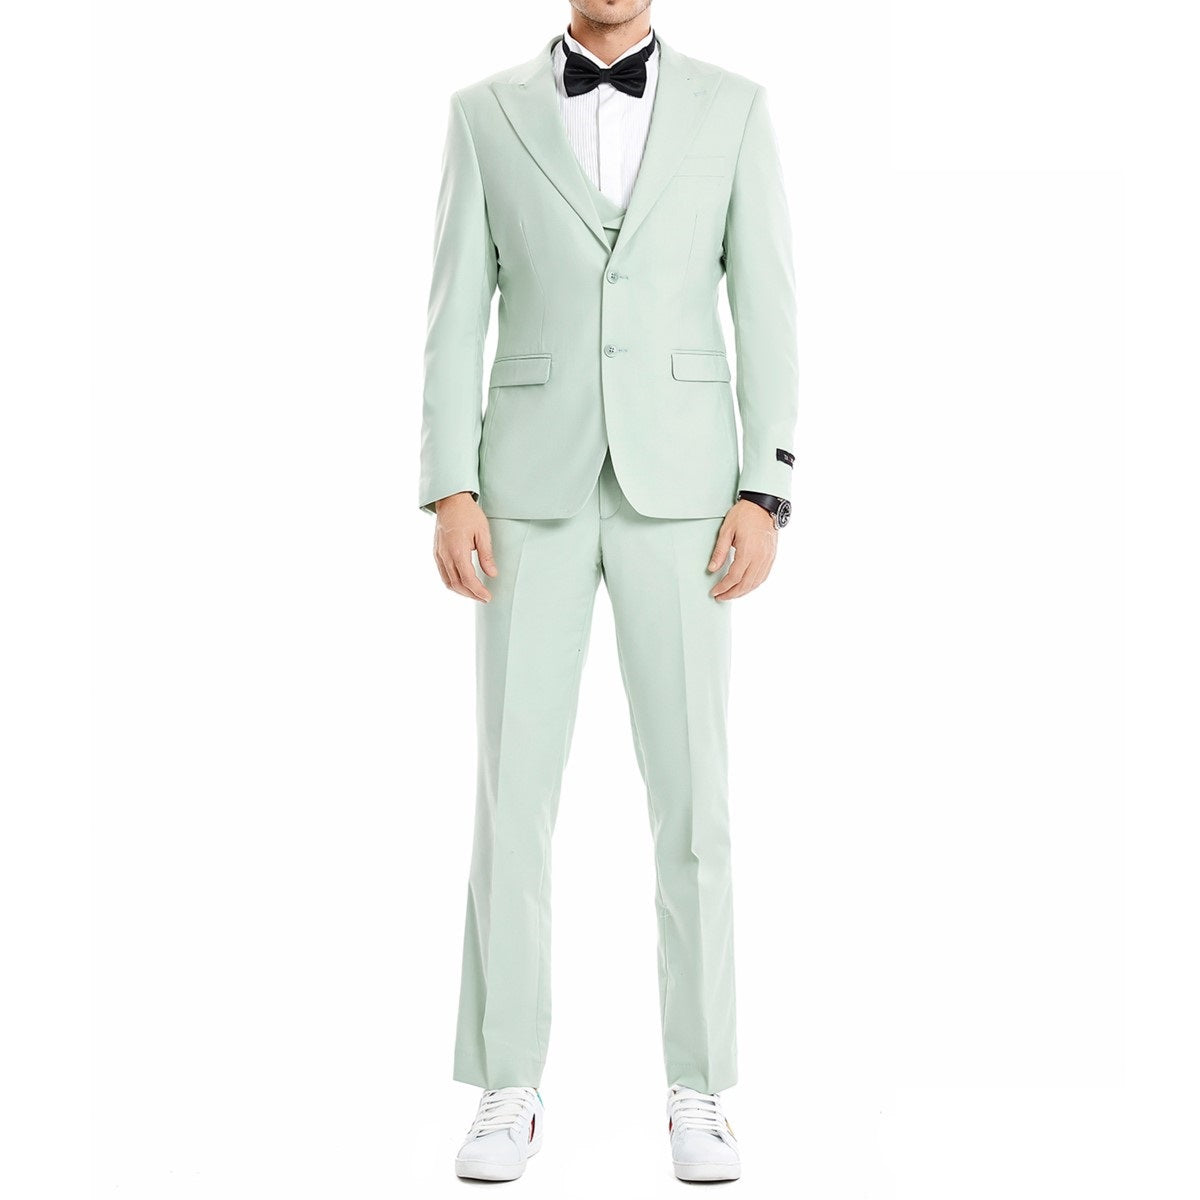 Traje Formal para Hombre TA-M370SK-01 - Formal Suit for Men